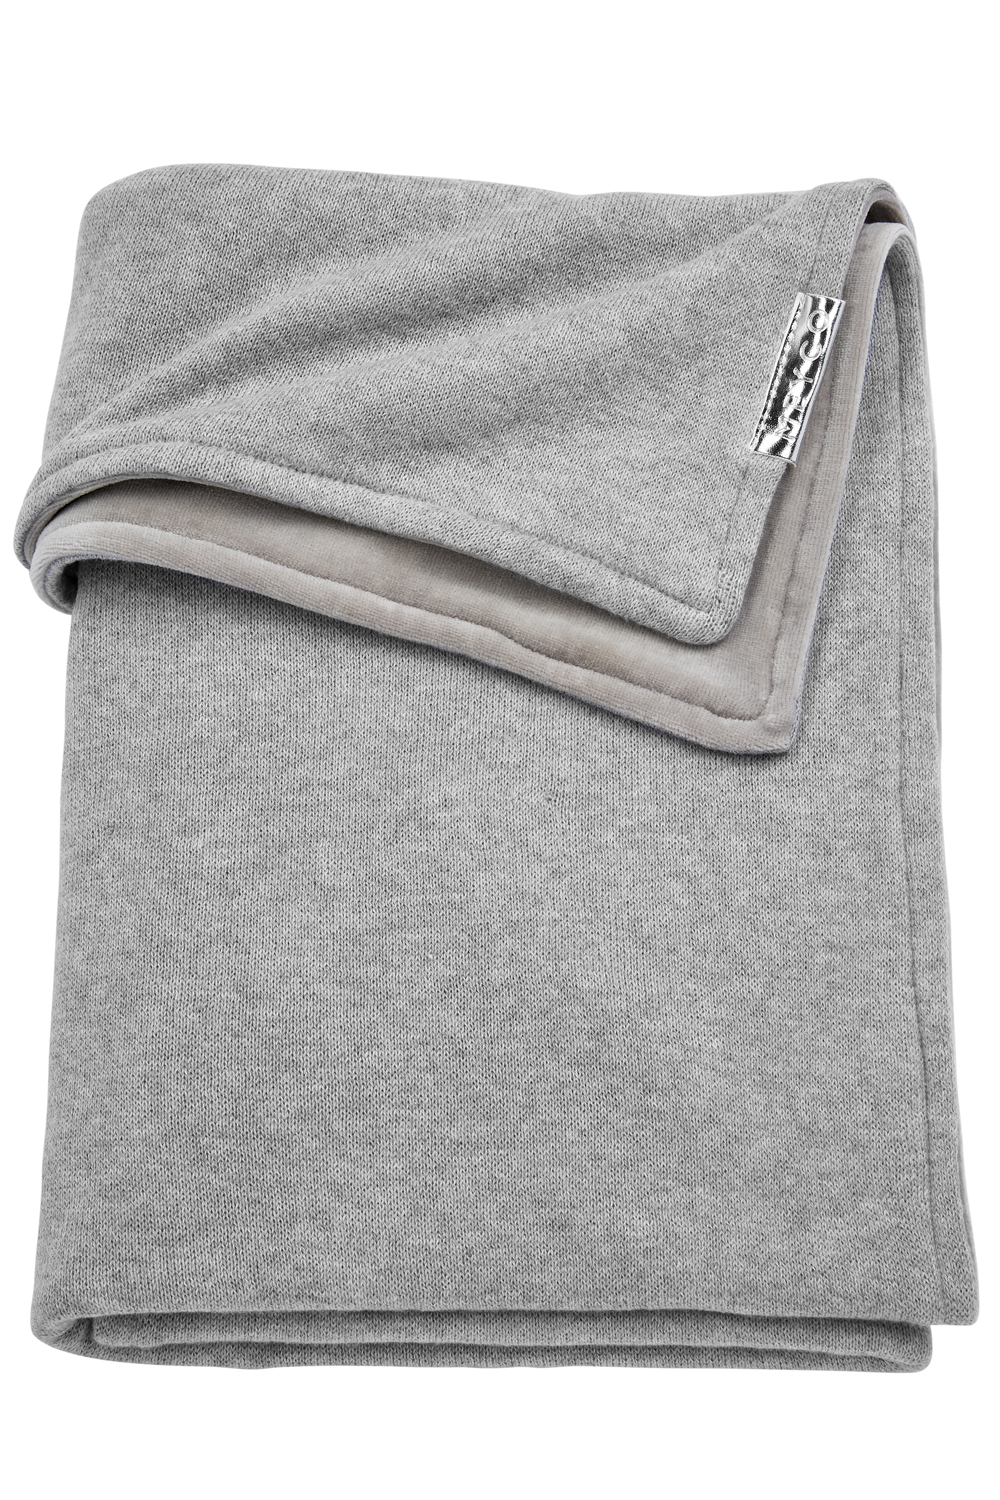 Crib bed blanket Knit Basic velvet - grey melange - 75x100cm